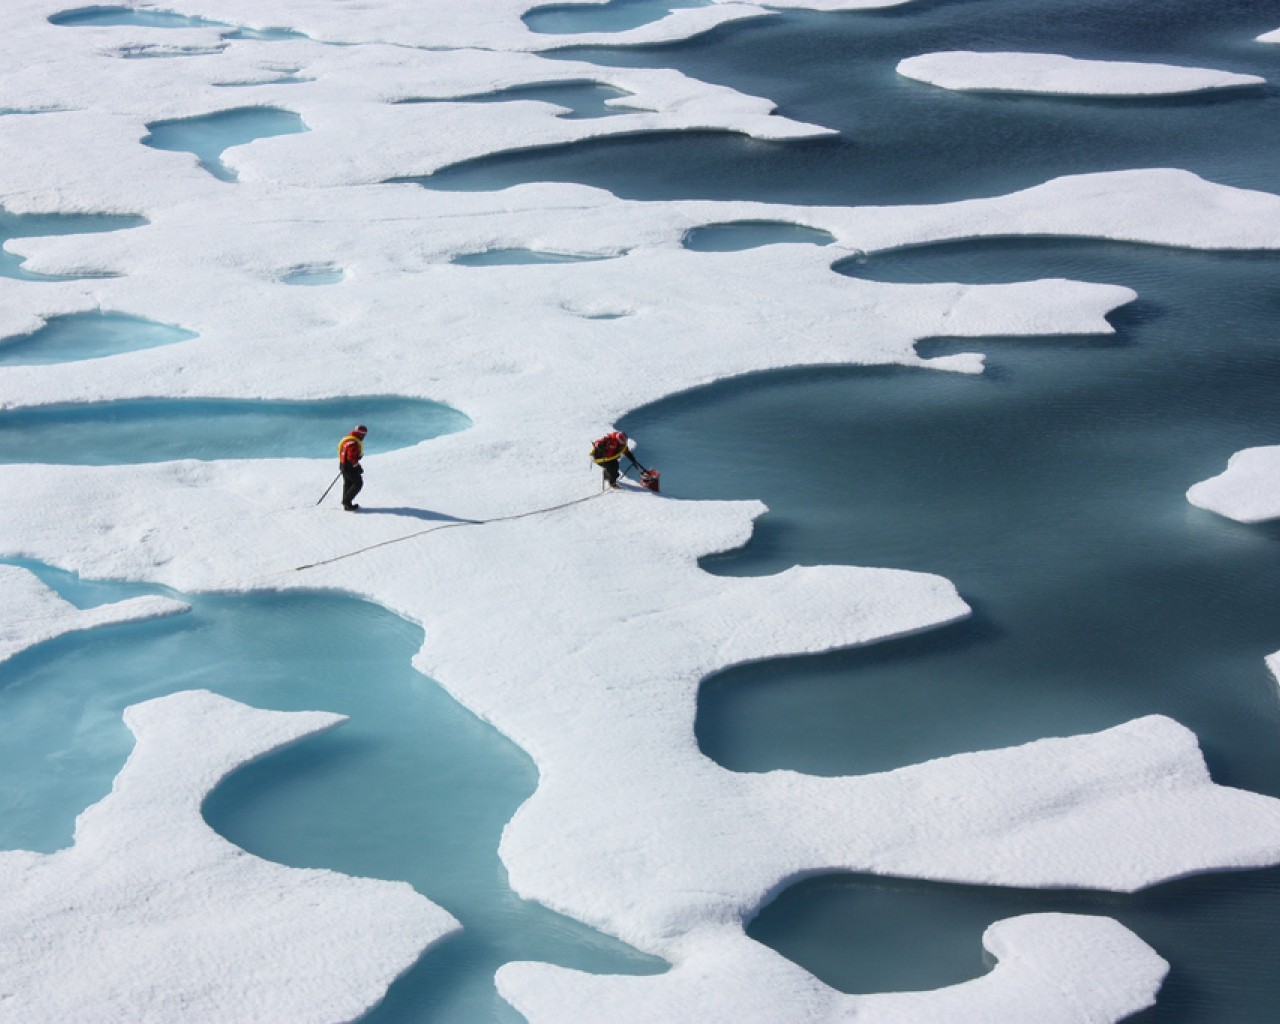 Модель изменения протяженности арктического морского льда (1979-2013) - переменные, управляющие "минималистской" моделью, и их климатическое значение